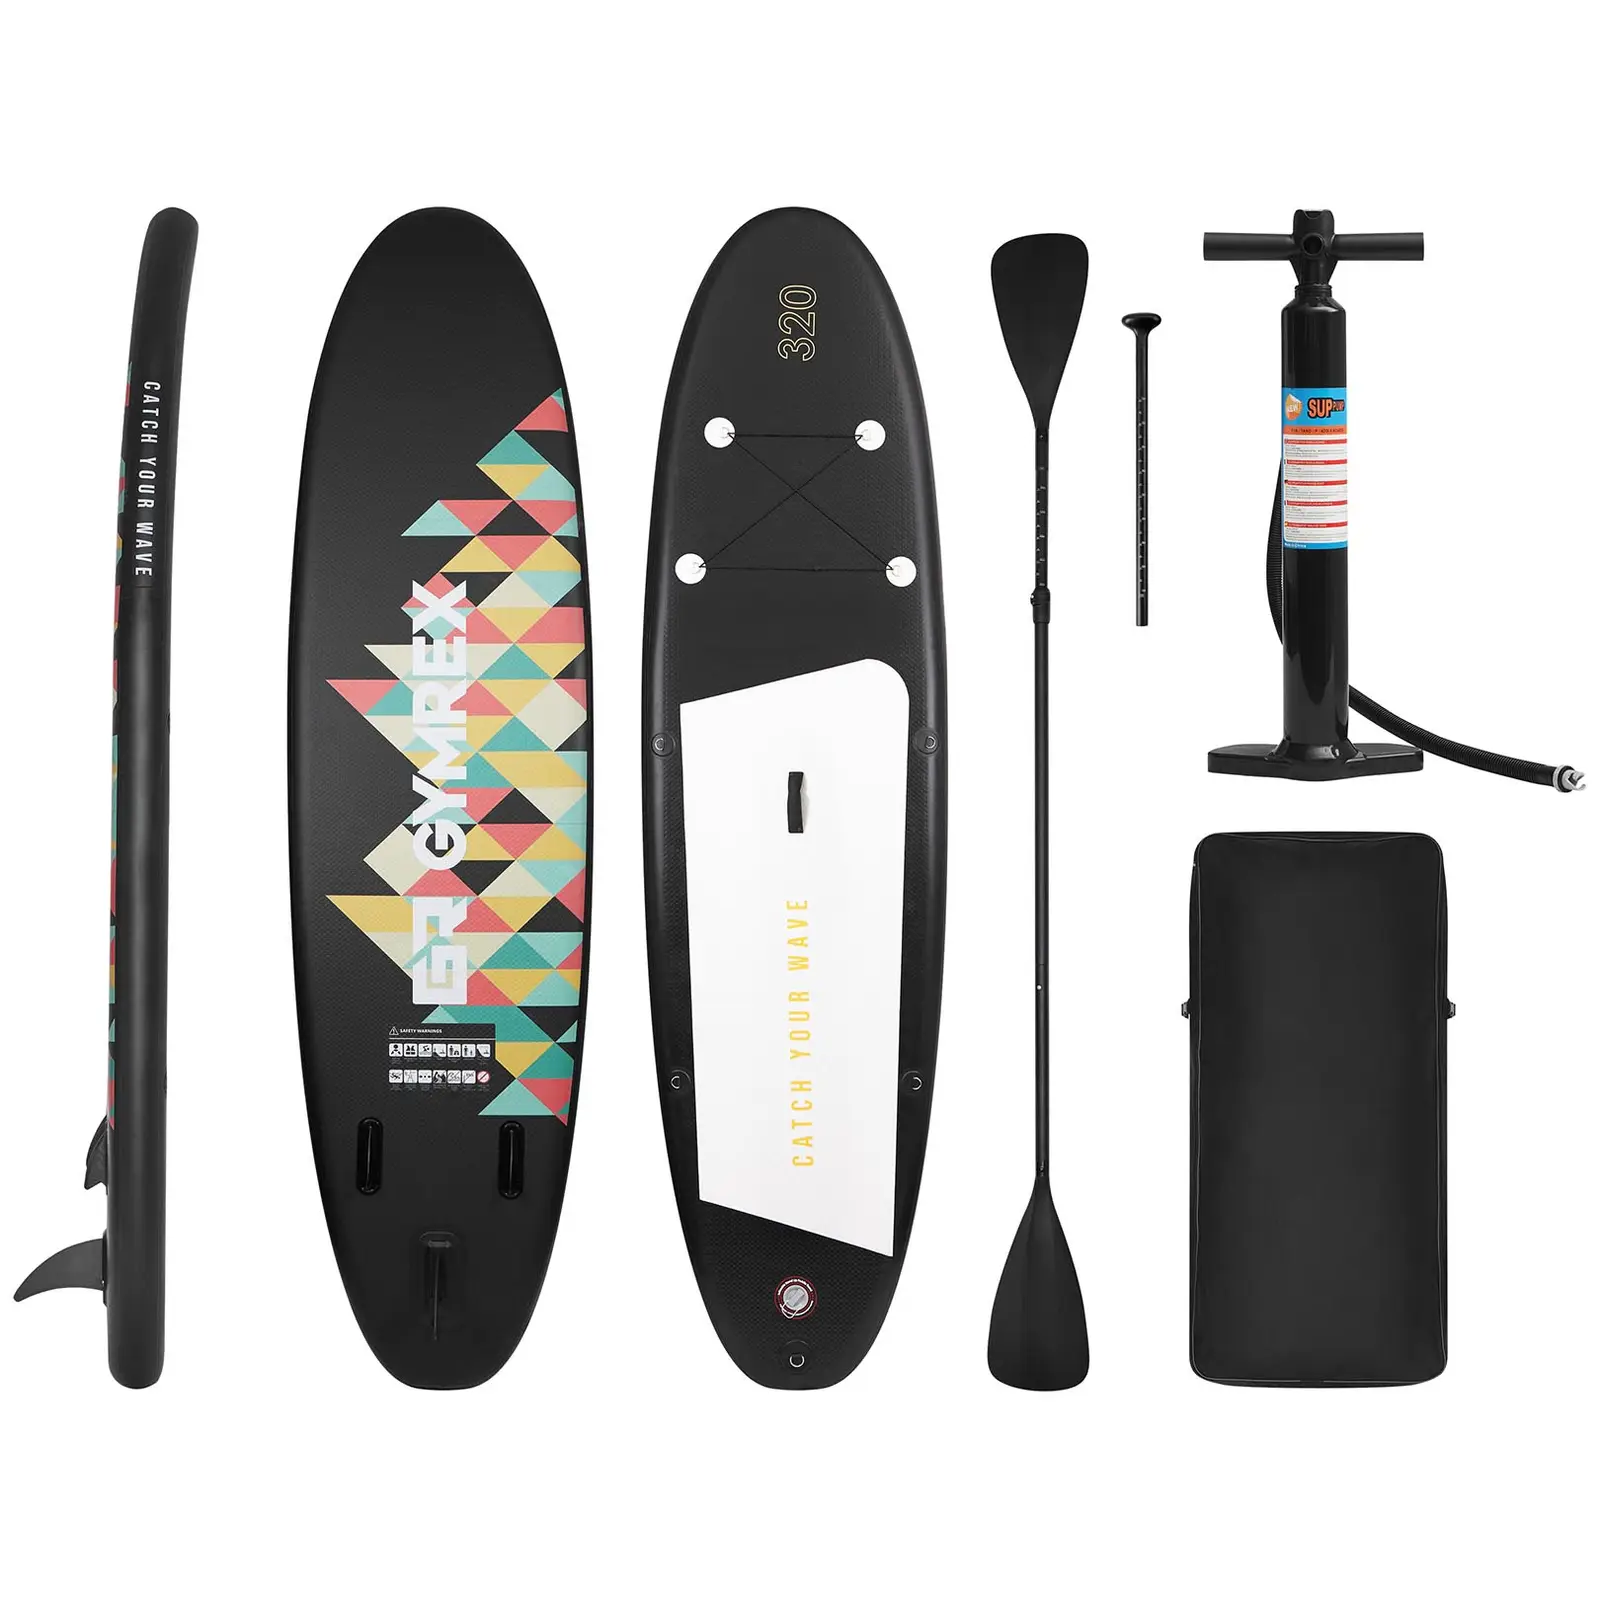 Nafukovací stand up paddleboard 130 kg černý - Vodní sporty Gymrex